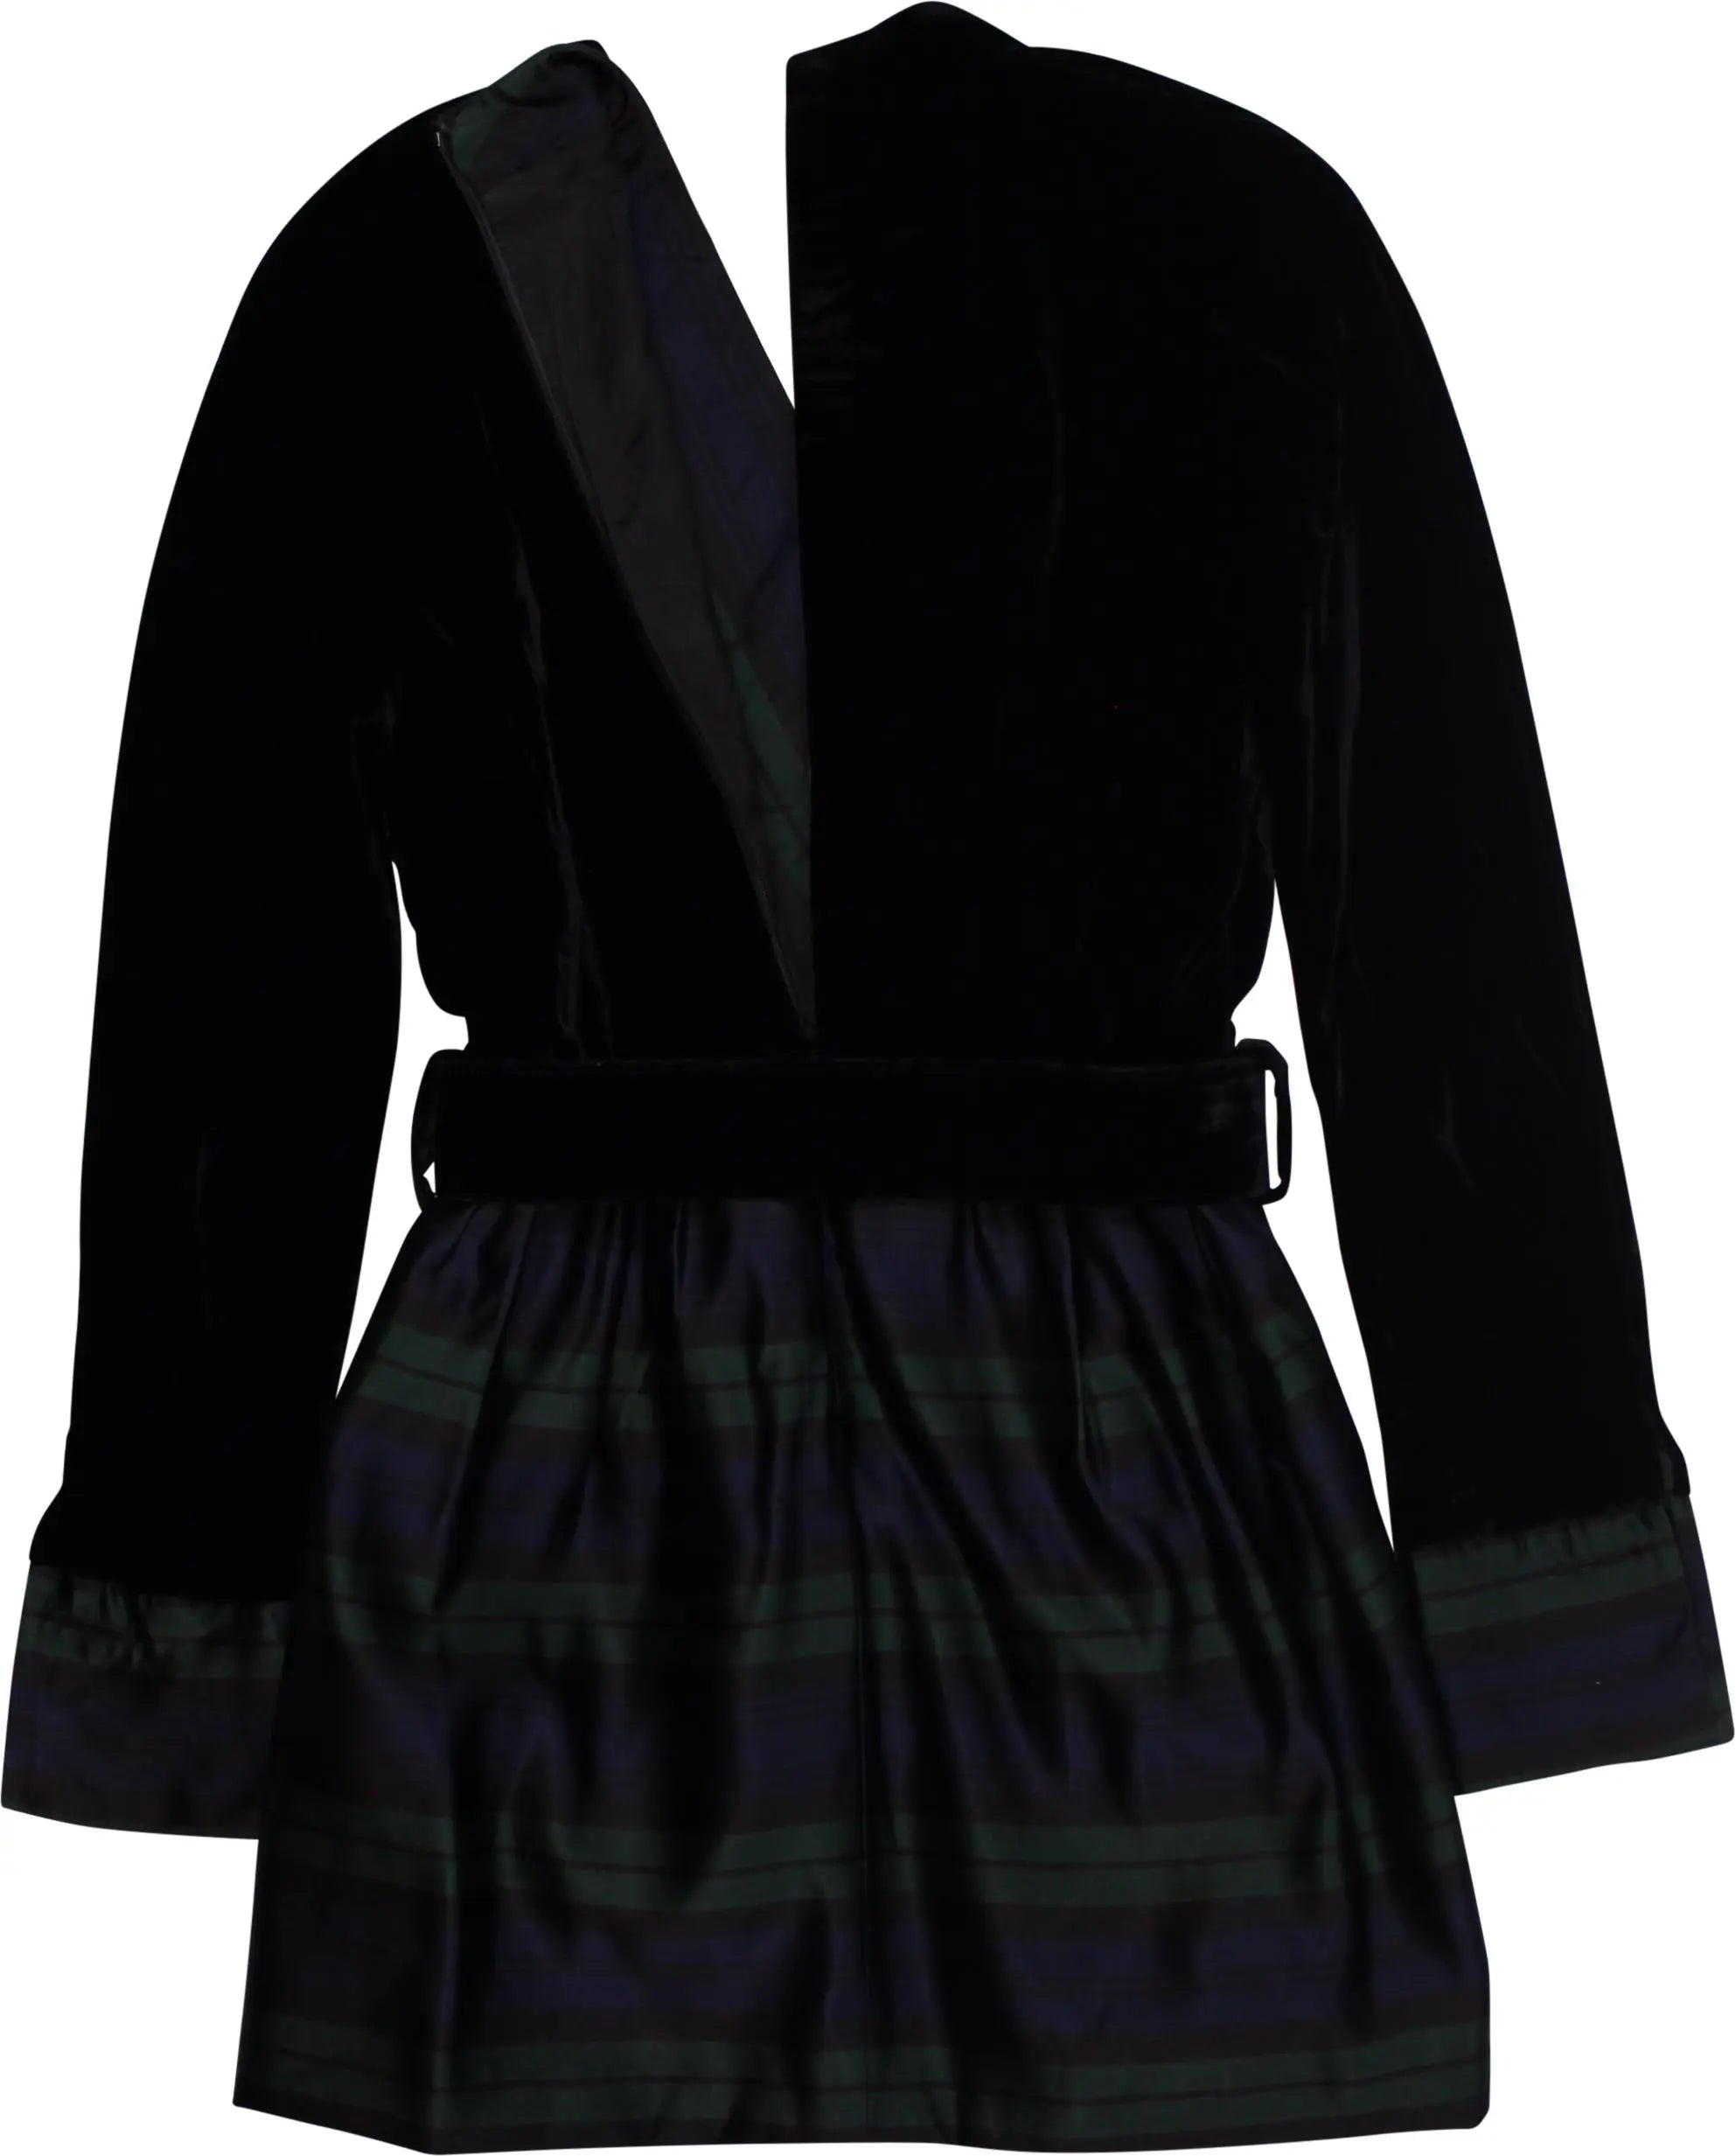 Leone - Velvet Belted Dress- ThriftTale.com - Vintage and second handclothing